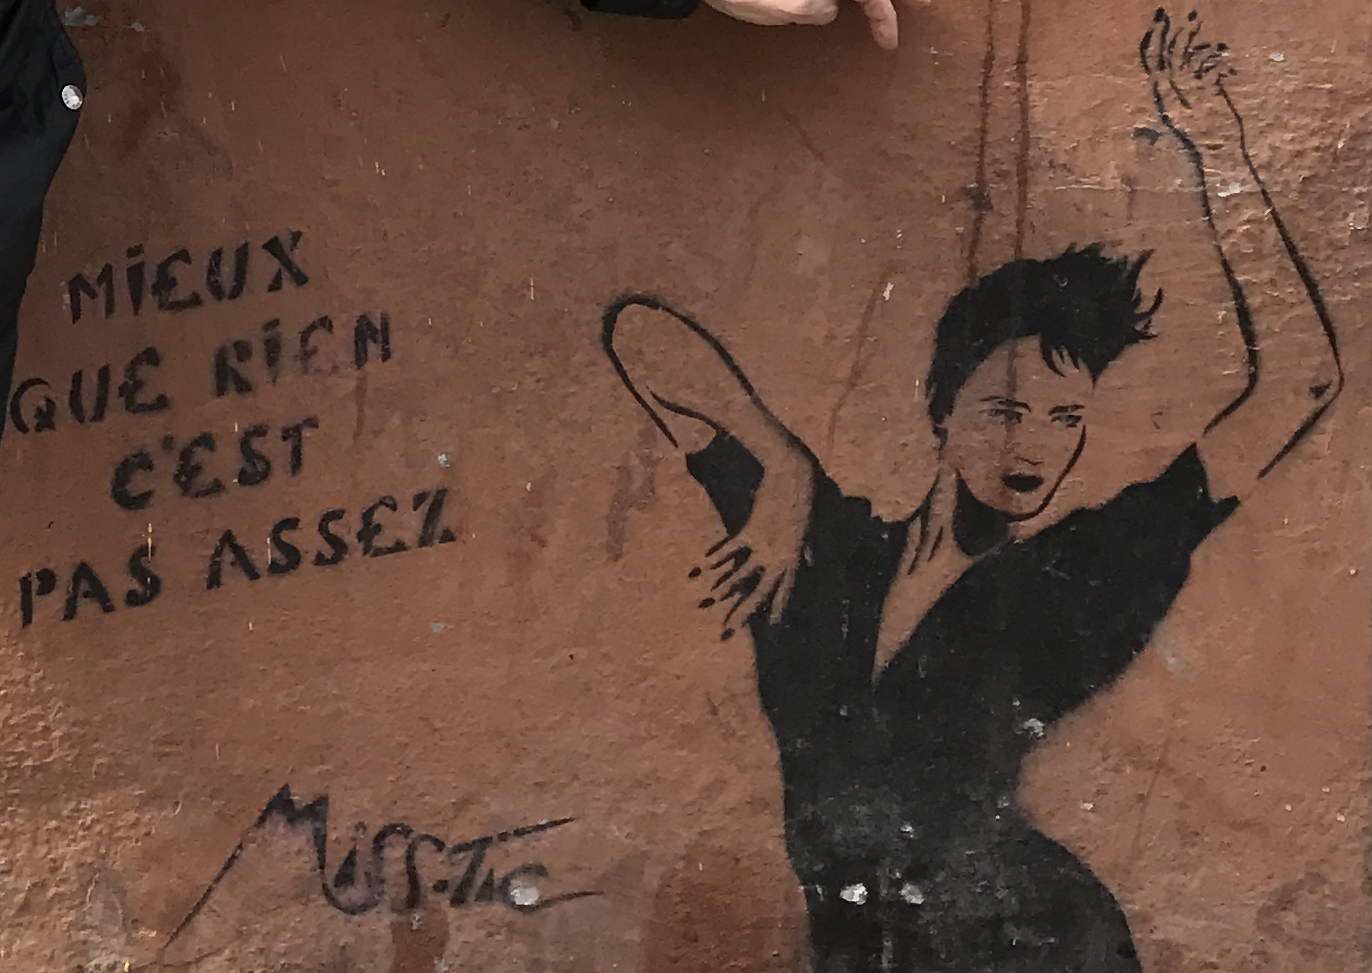 Graphe de l'artiste Miss Tic, dans le 13ème arrondissement de Paris.